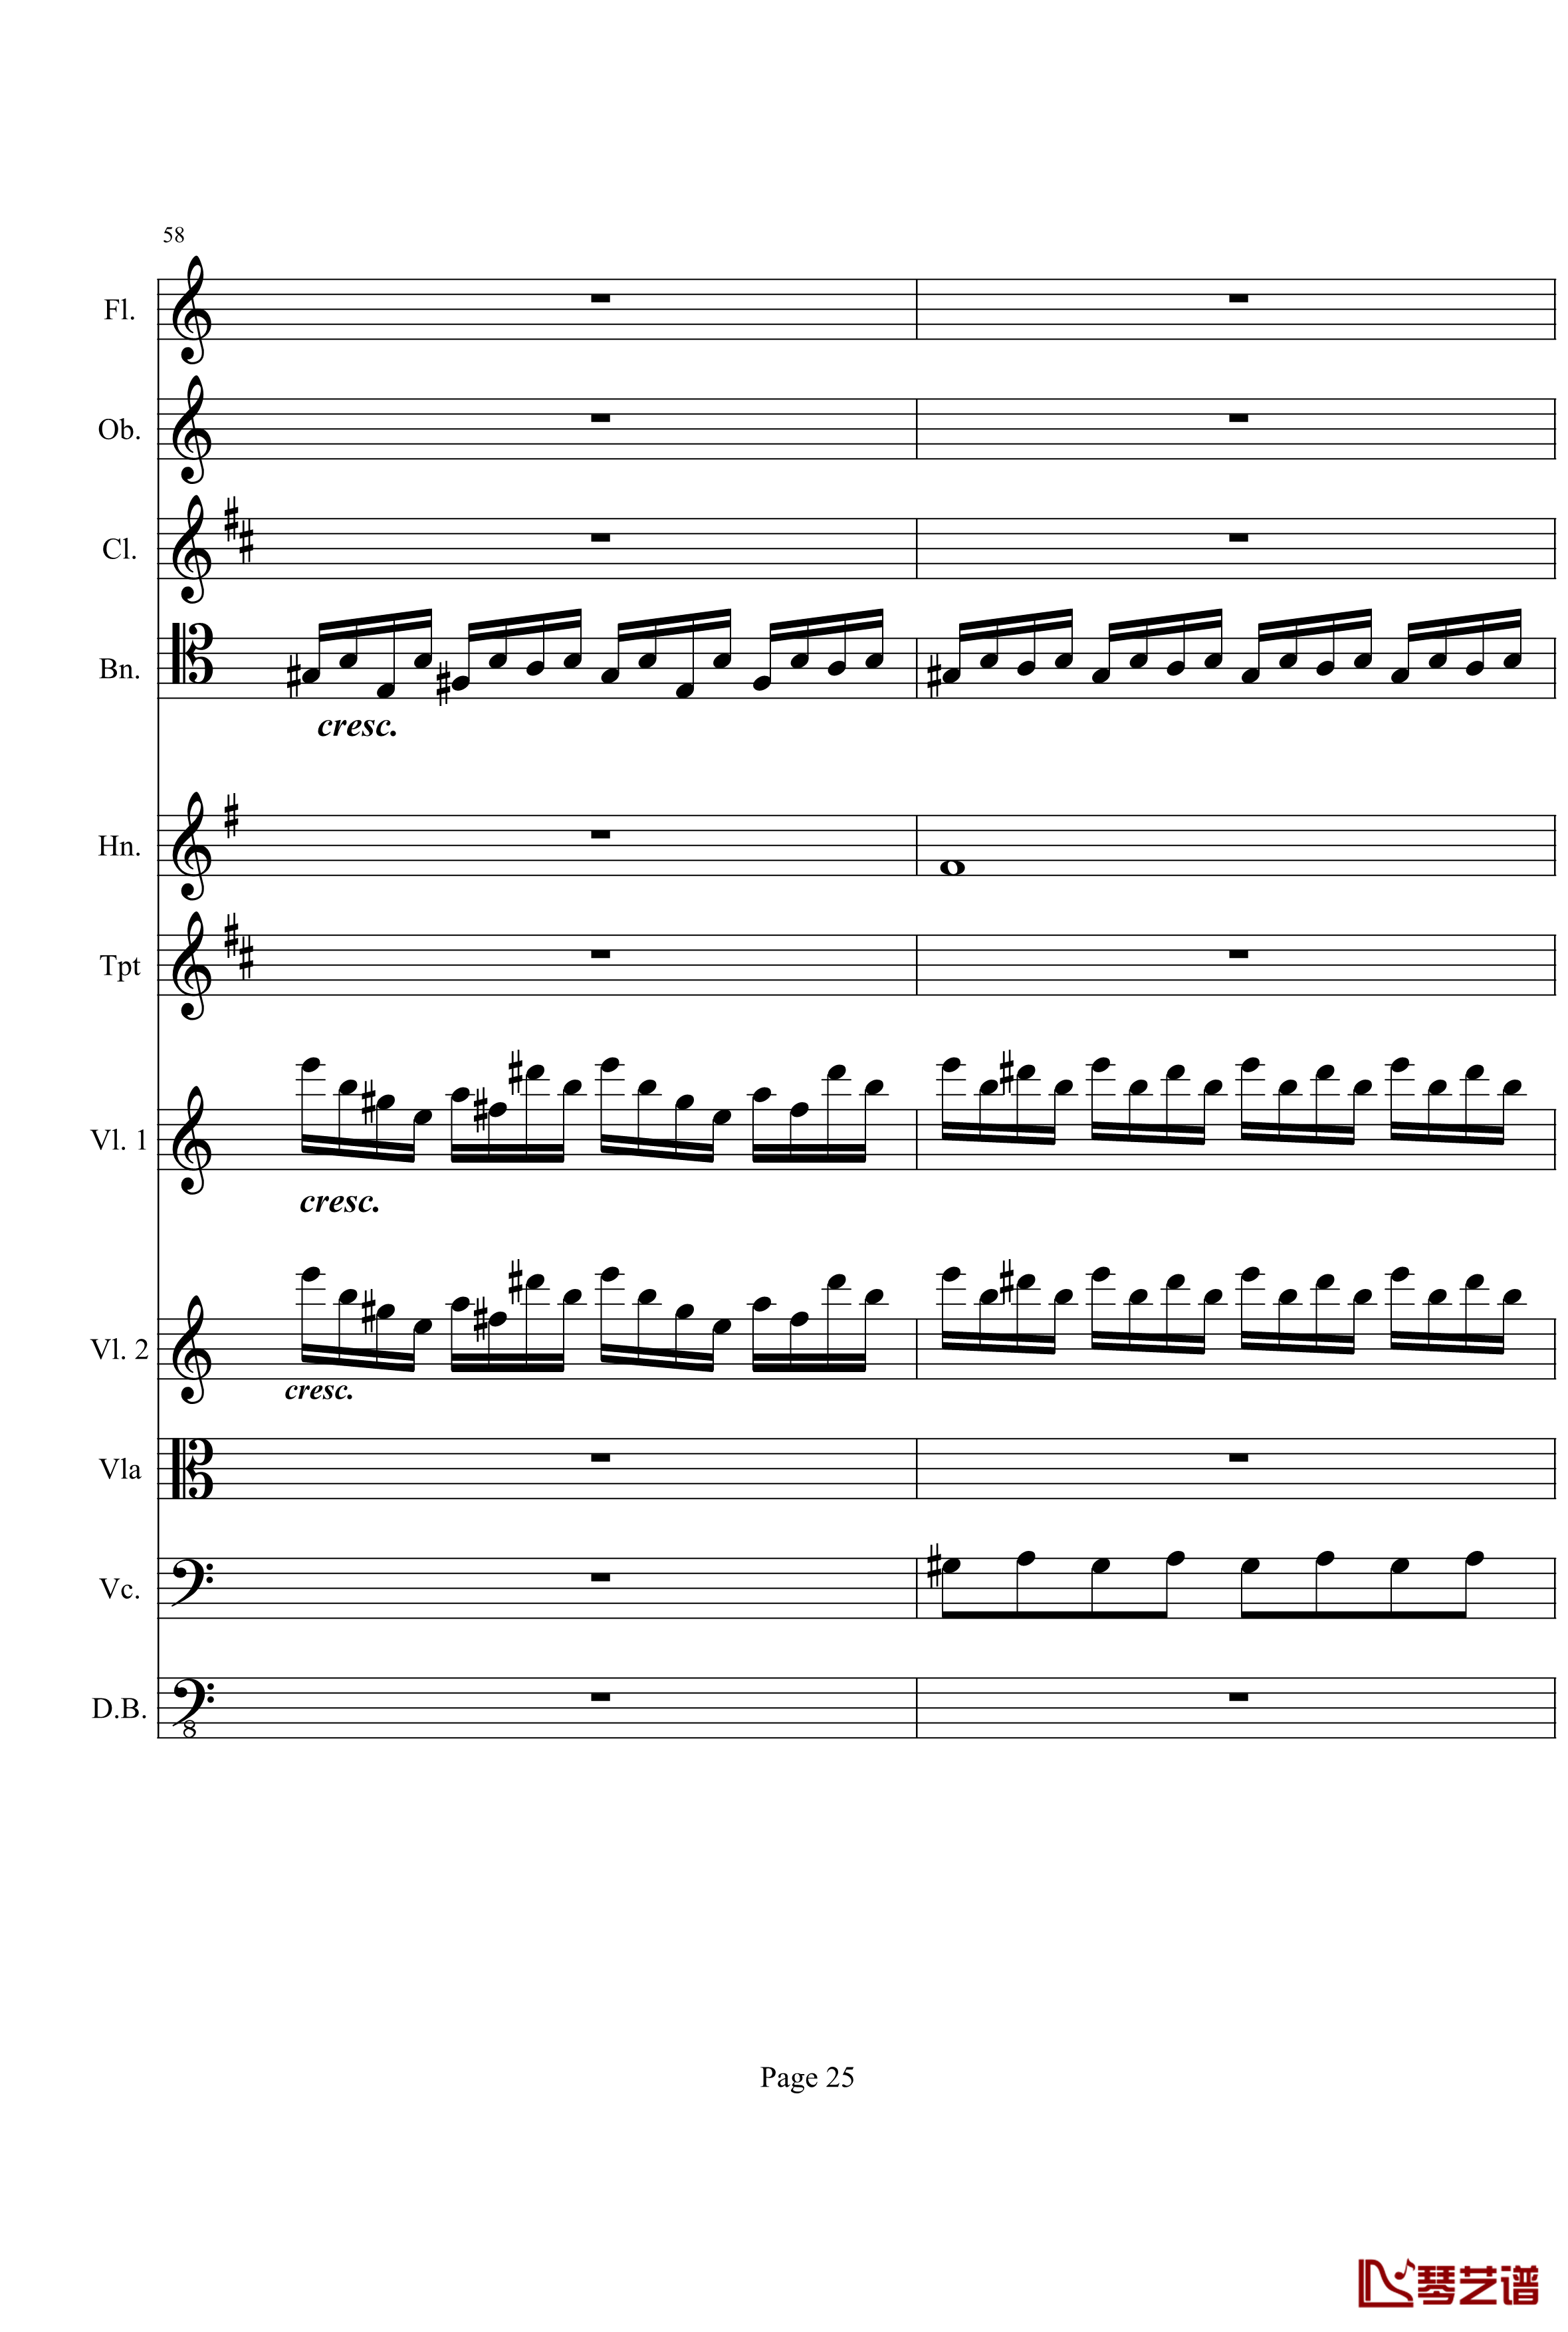 奏鸣曲之交响钢琴谱-第21-Ⅰ-贝多芬-beethoven25